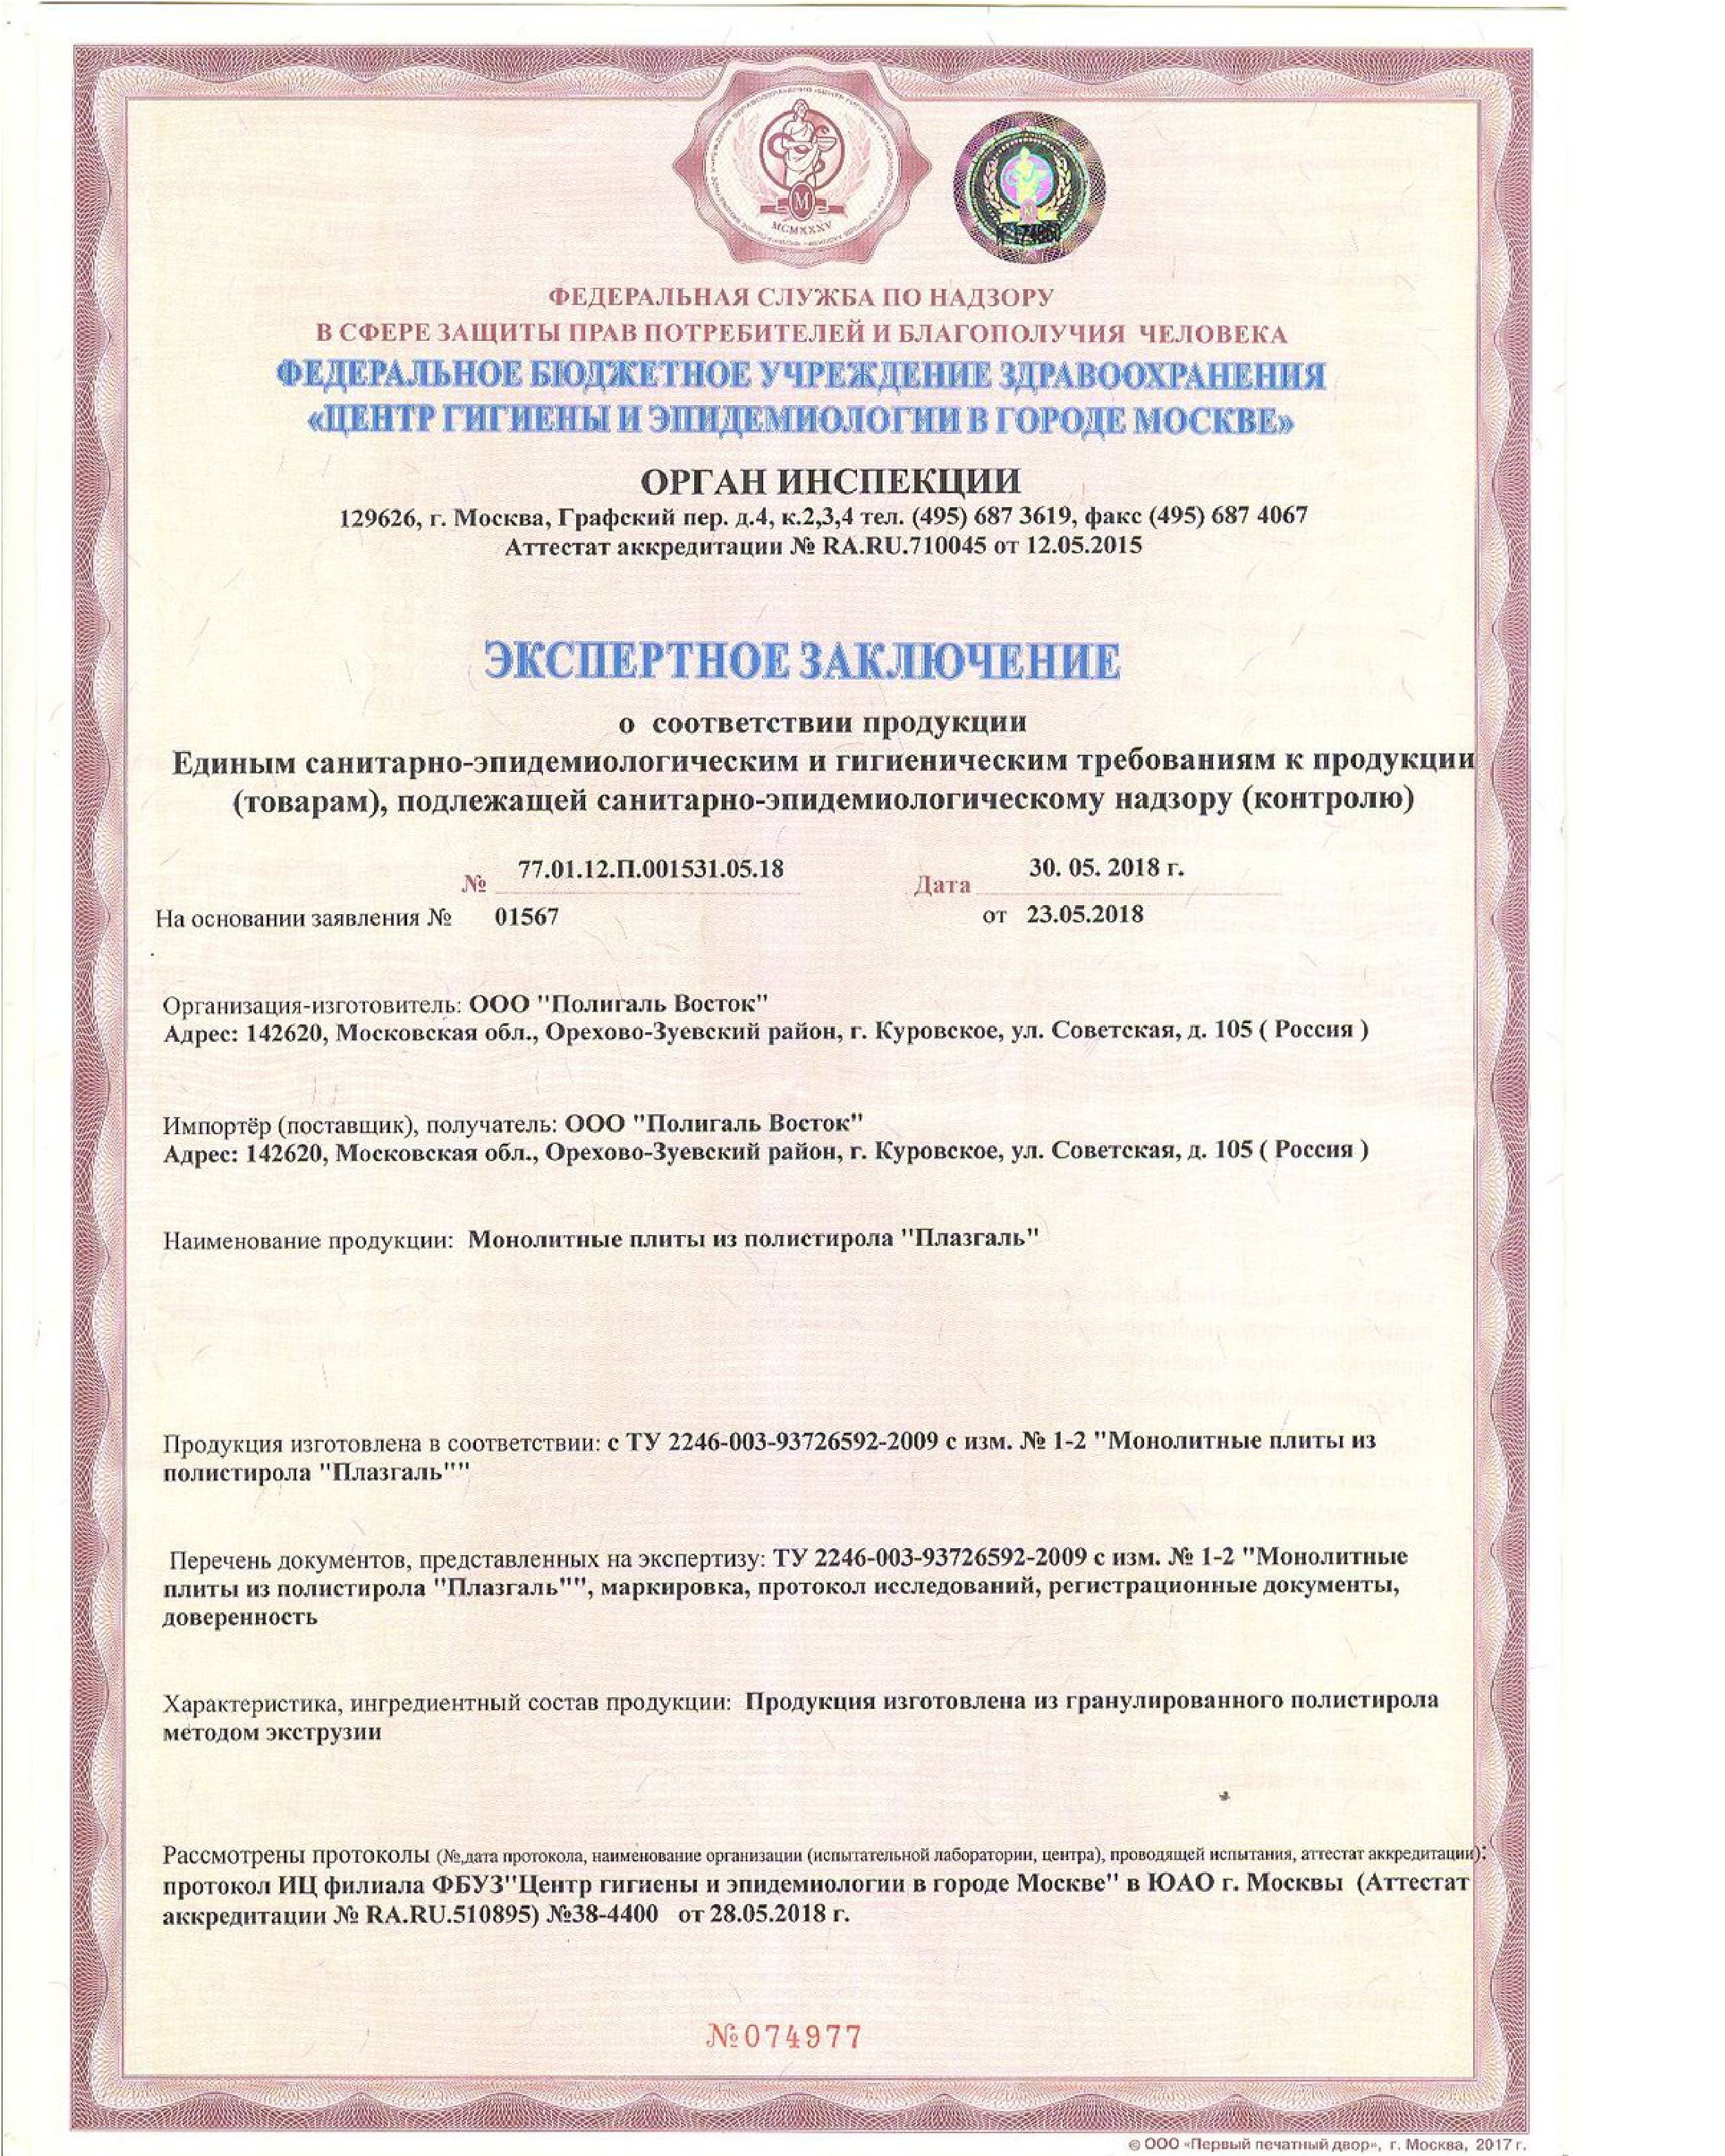 Полигаль полистирол Плазгаль гигиенический сертификат